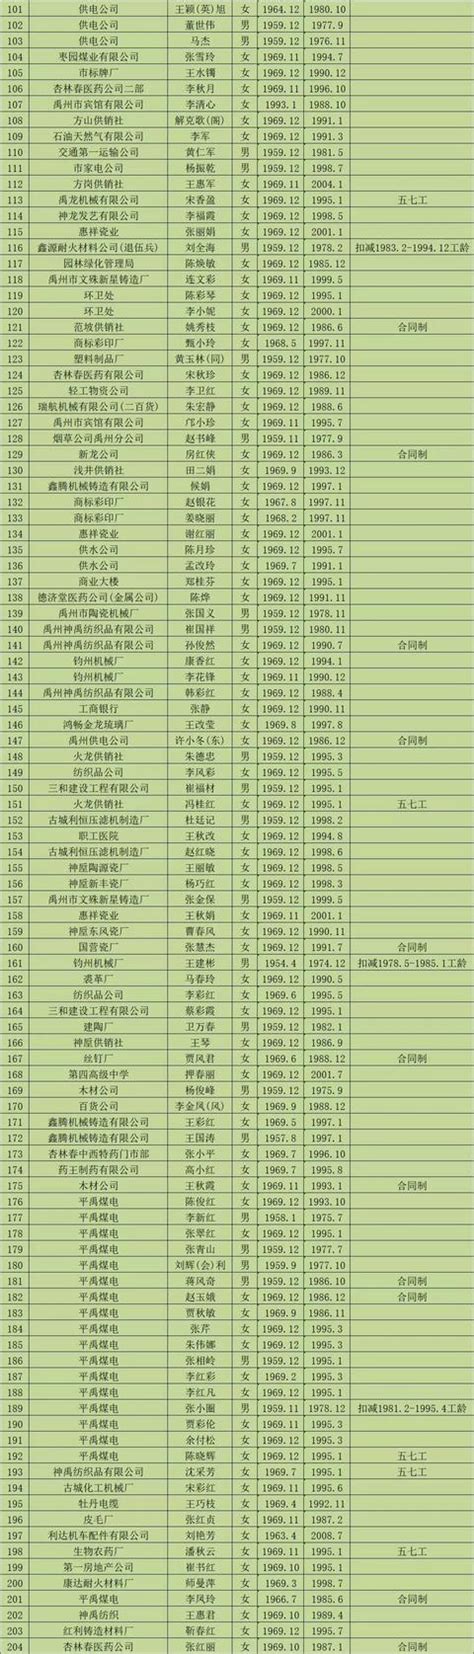 2019年12月禹州市企业退休人员名单公示_禹州房产-禹州第一网